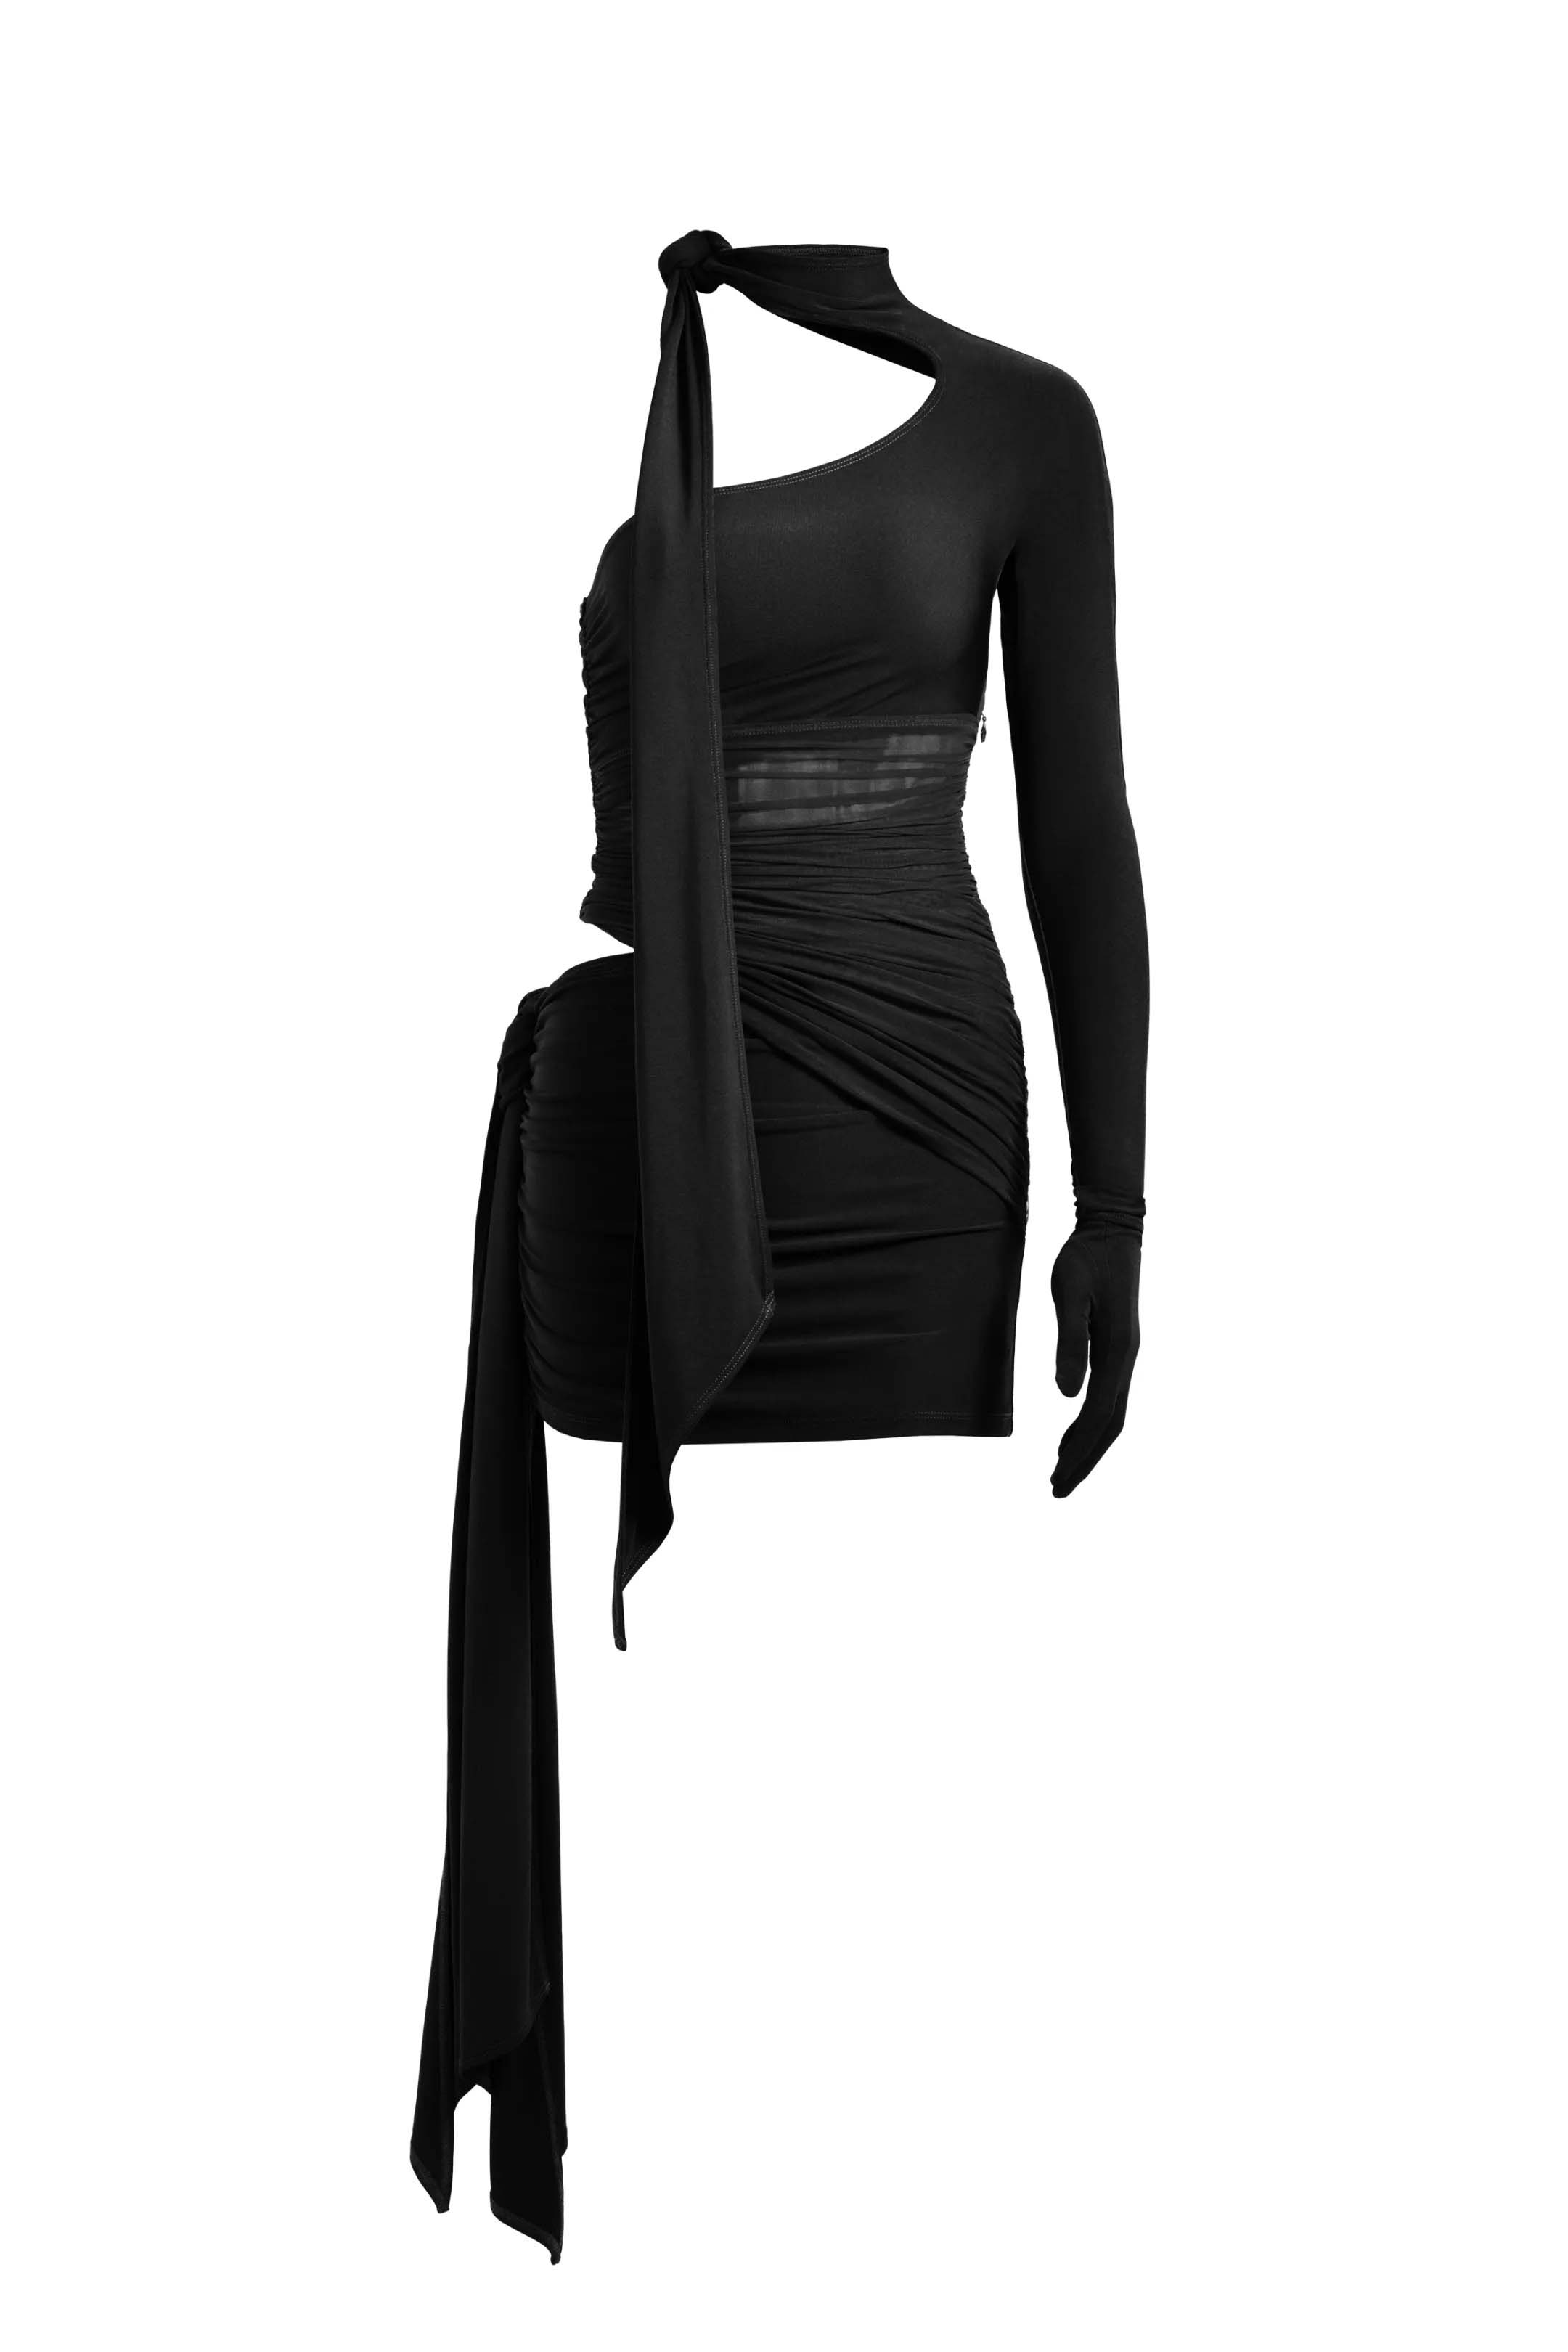 Mugler H&M Knot-Detail One-Shoulder Dress Black